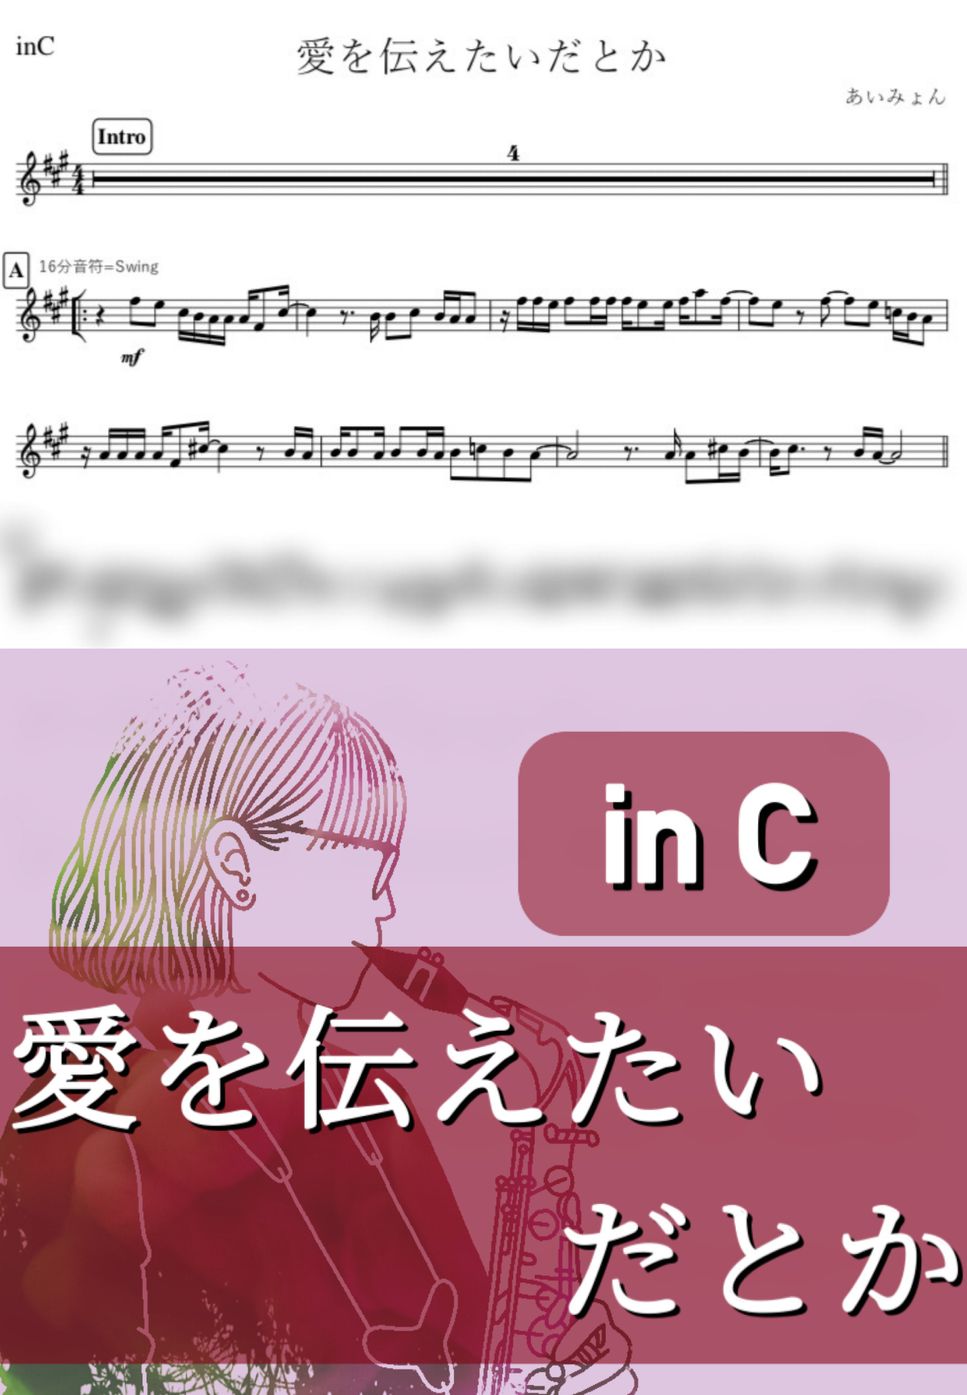 あいみょん - 愛を伝えたいだとか (C) by kanamusic